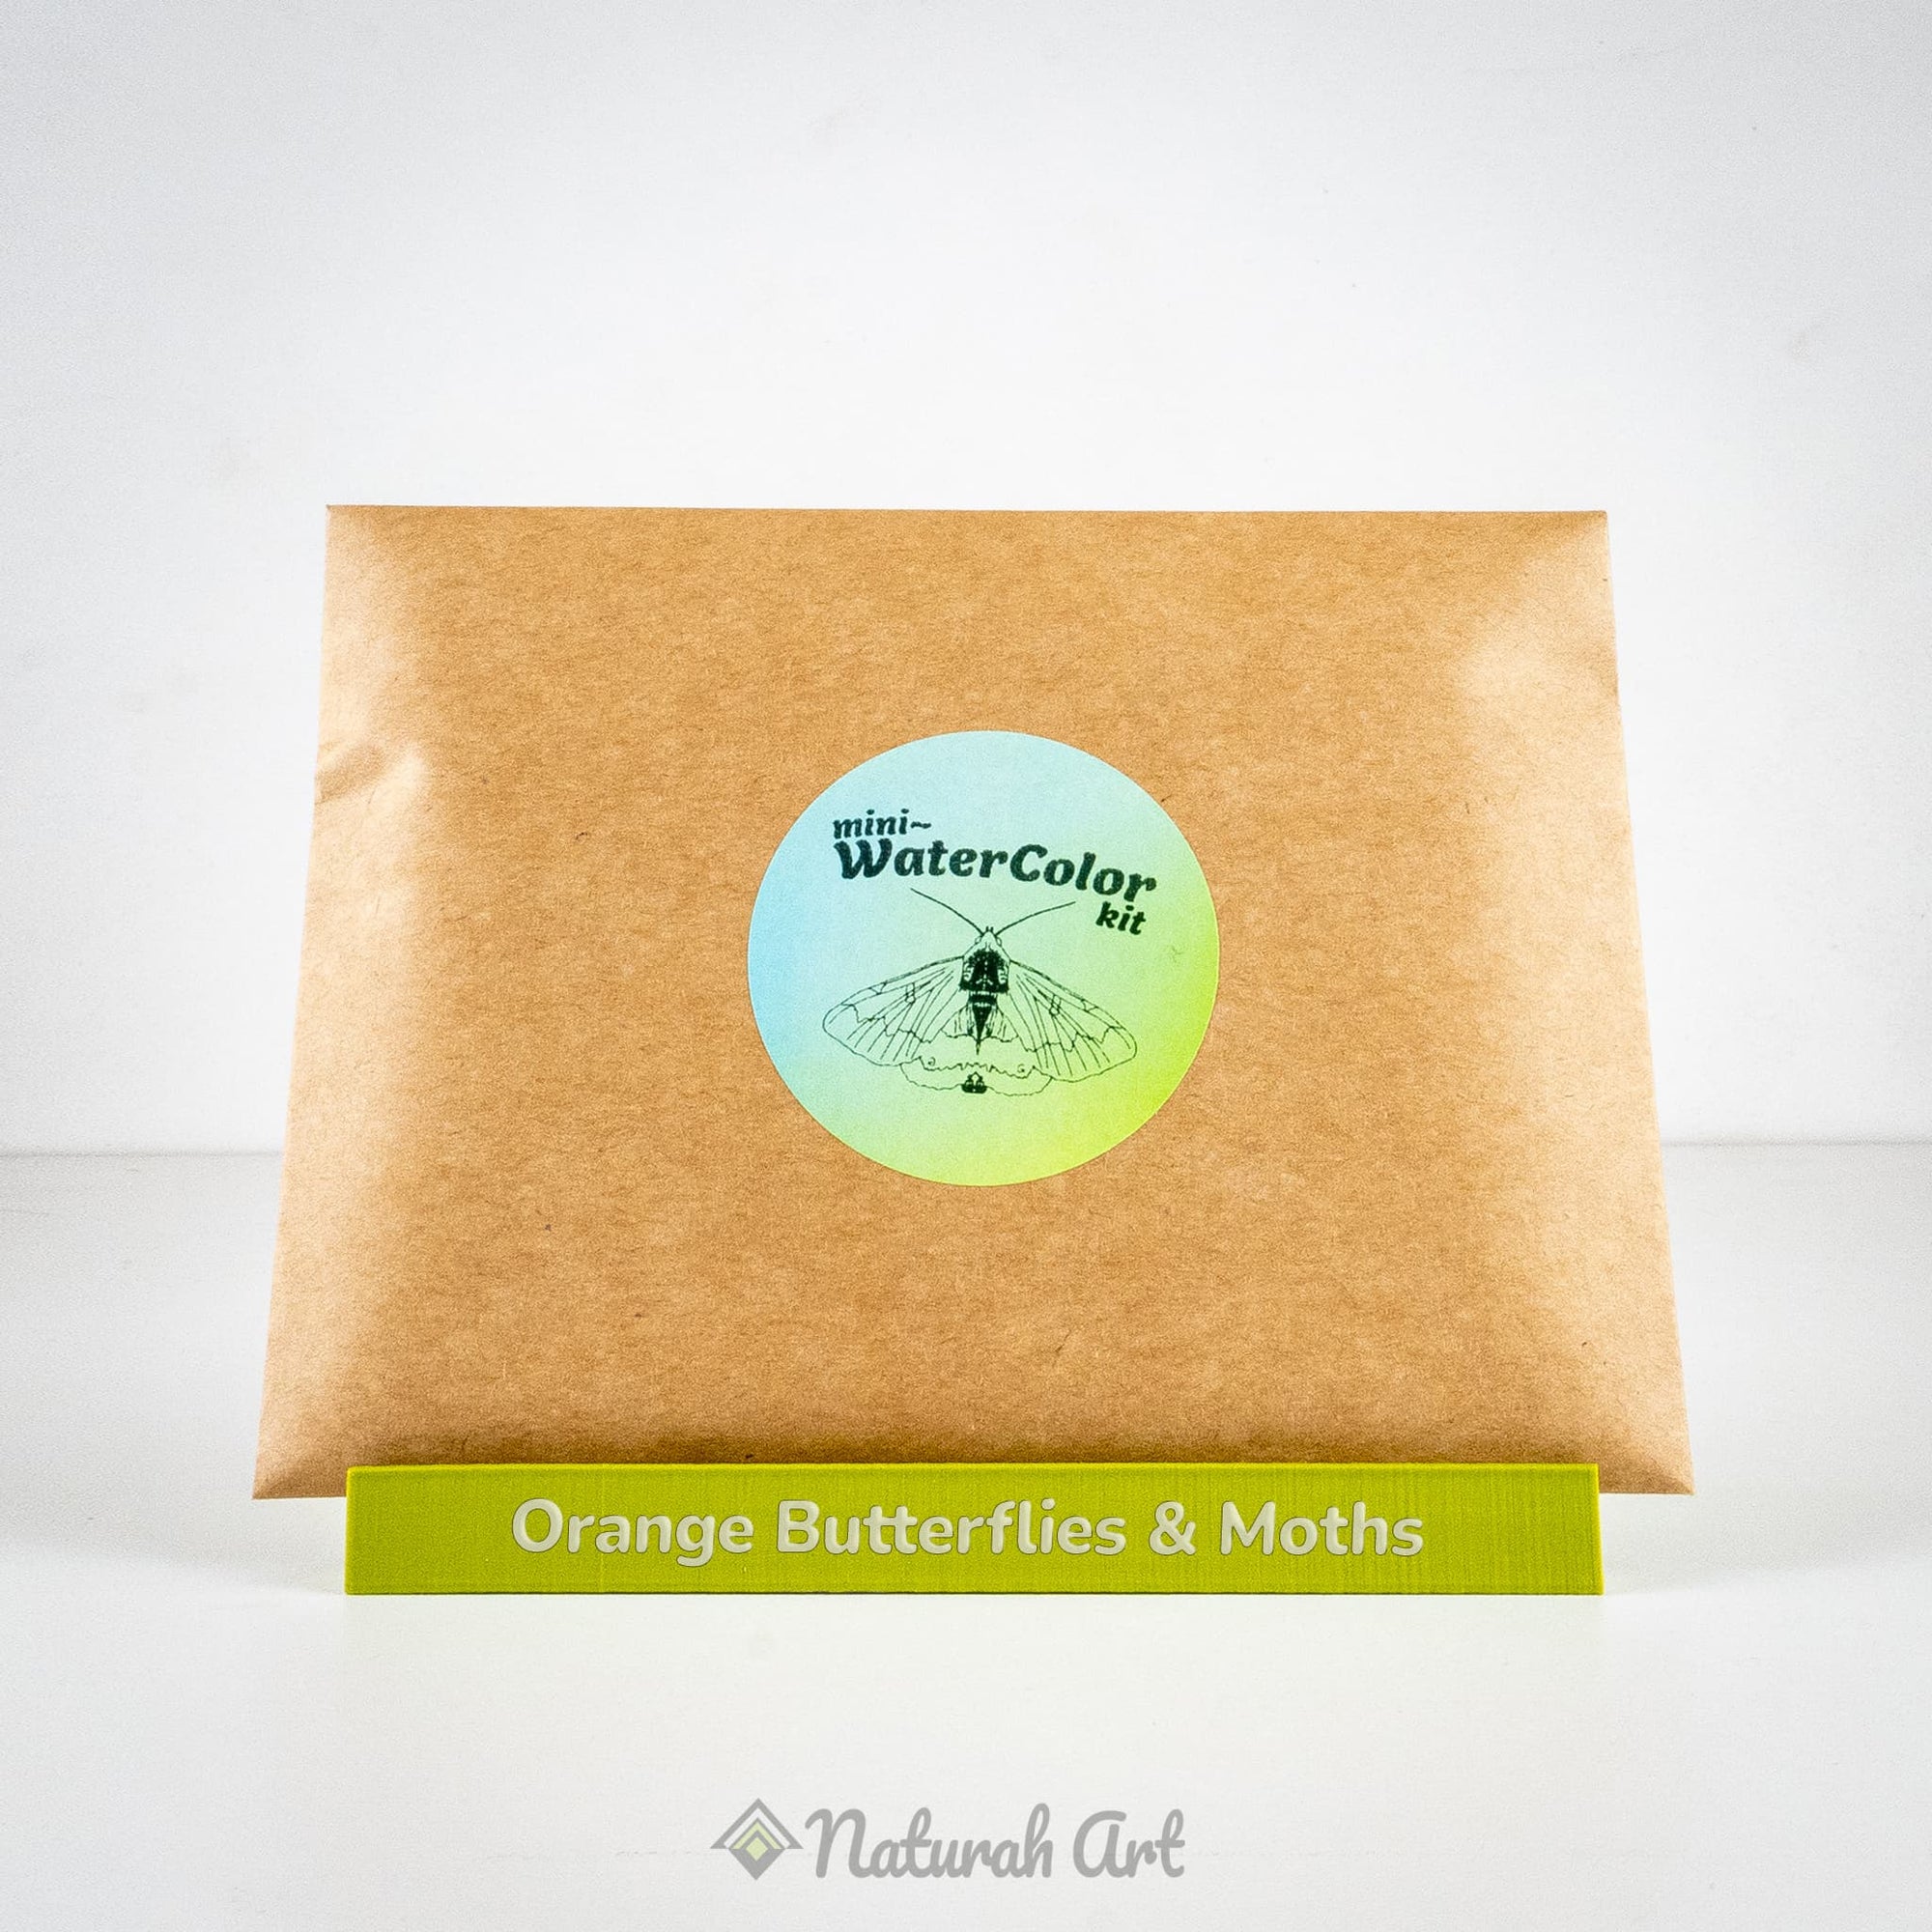 Mini-WaterColor Kit ~ Butterflies & Moths